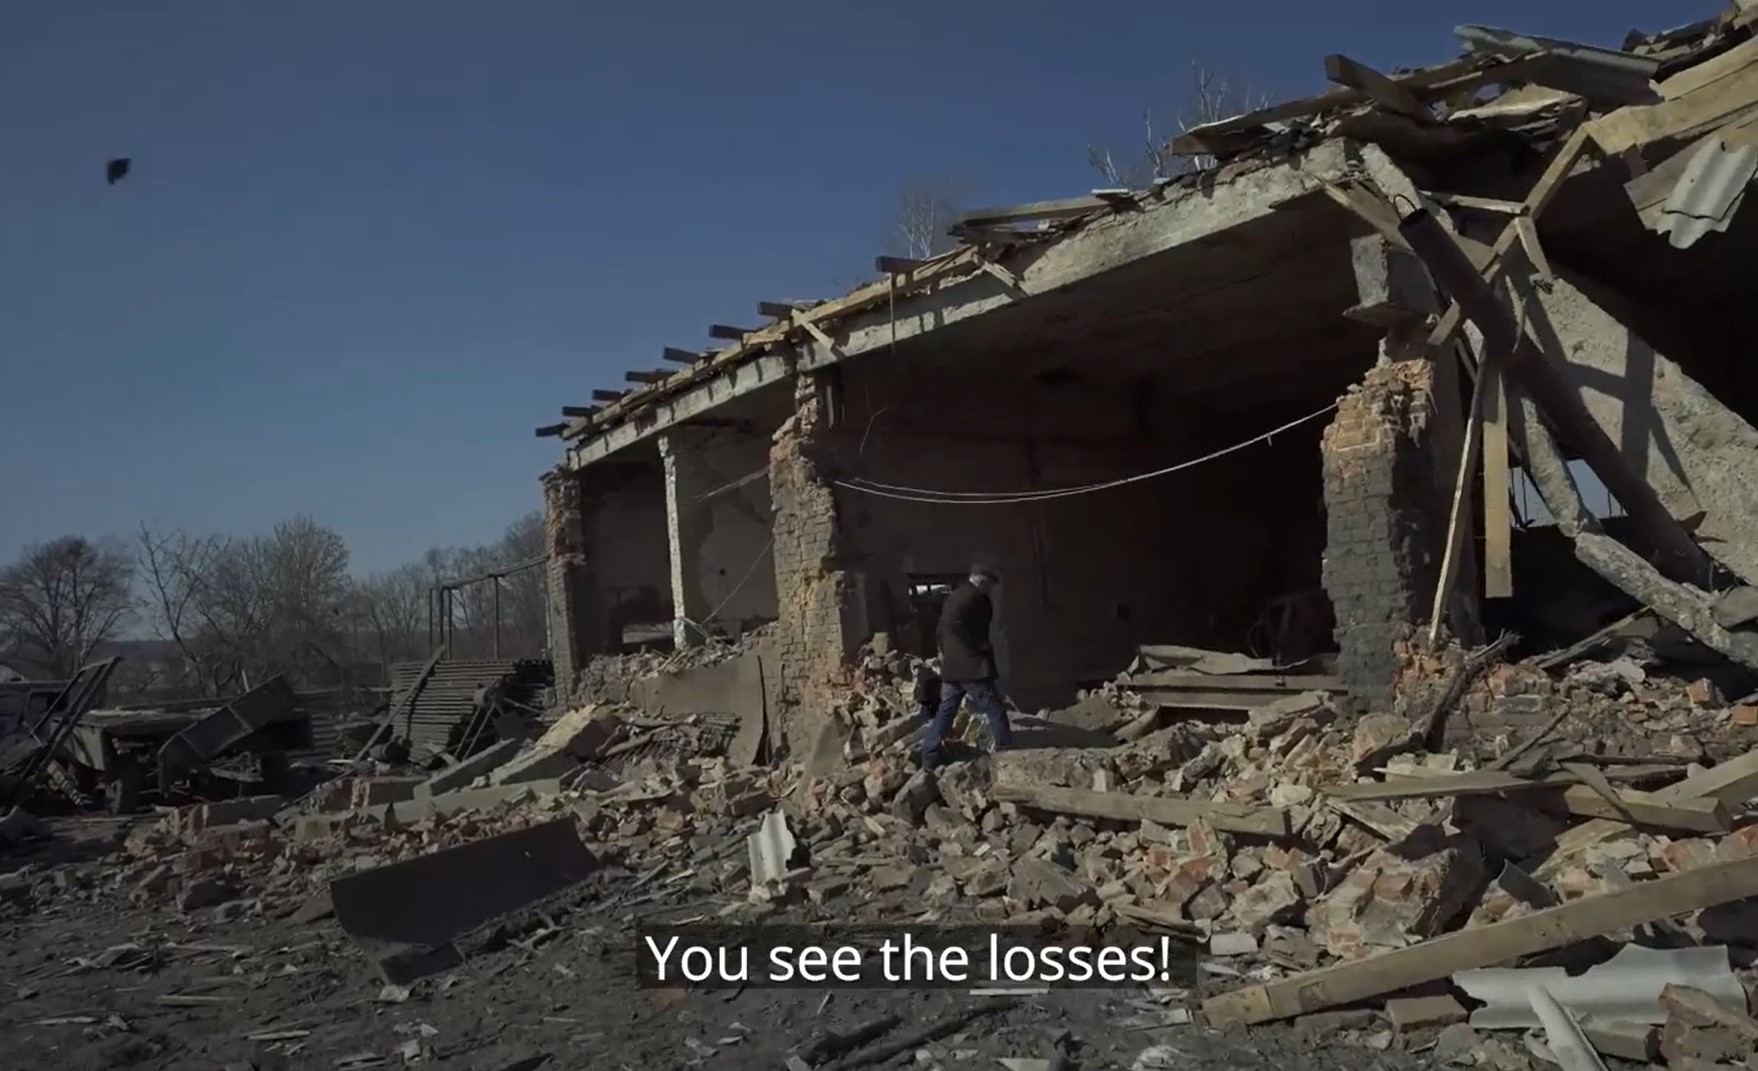 "Пришли спасатели и забрали все": смотрите, как живут люди в разбомбленной Боромле под Сумами